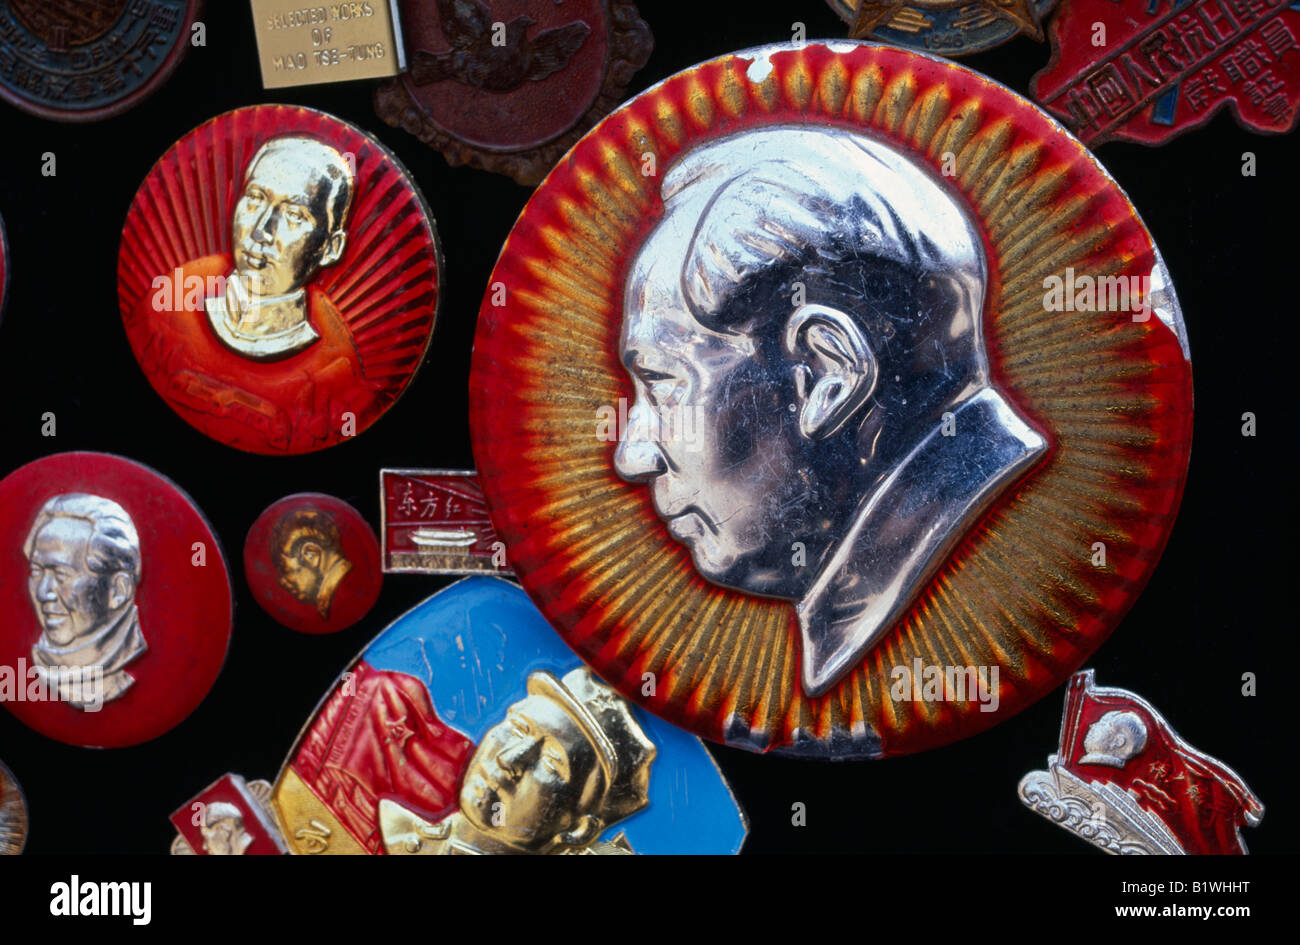 Asie Chine Shanghai Le Président Mao Zedong ou Mao Tse-Tung révolutionnaire communiste metal badges souvenirs souvenirs Banque D'Images